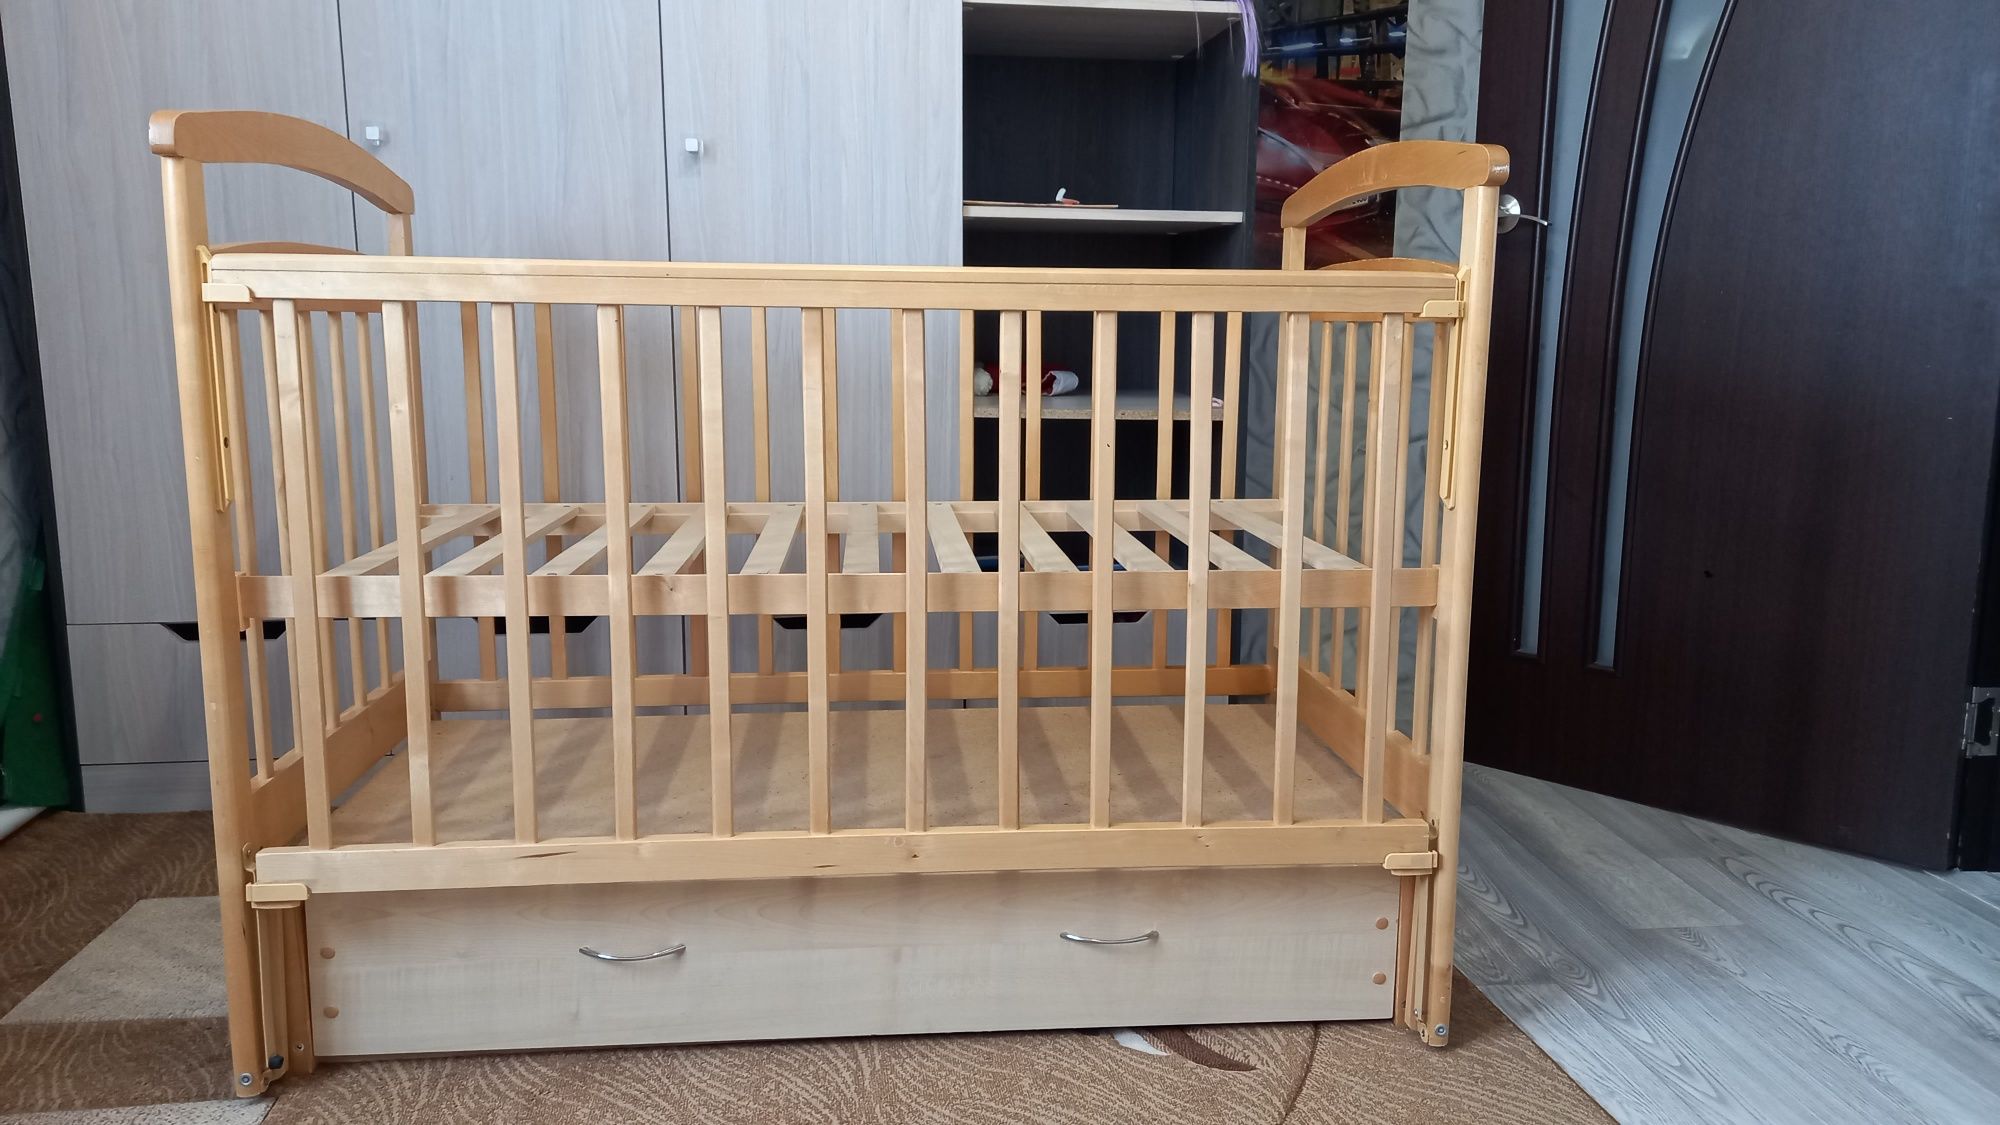 Детская кровать деревянная